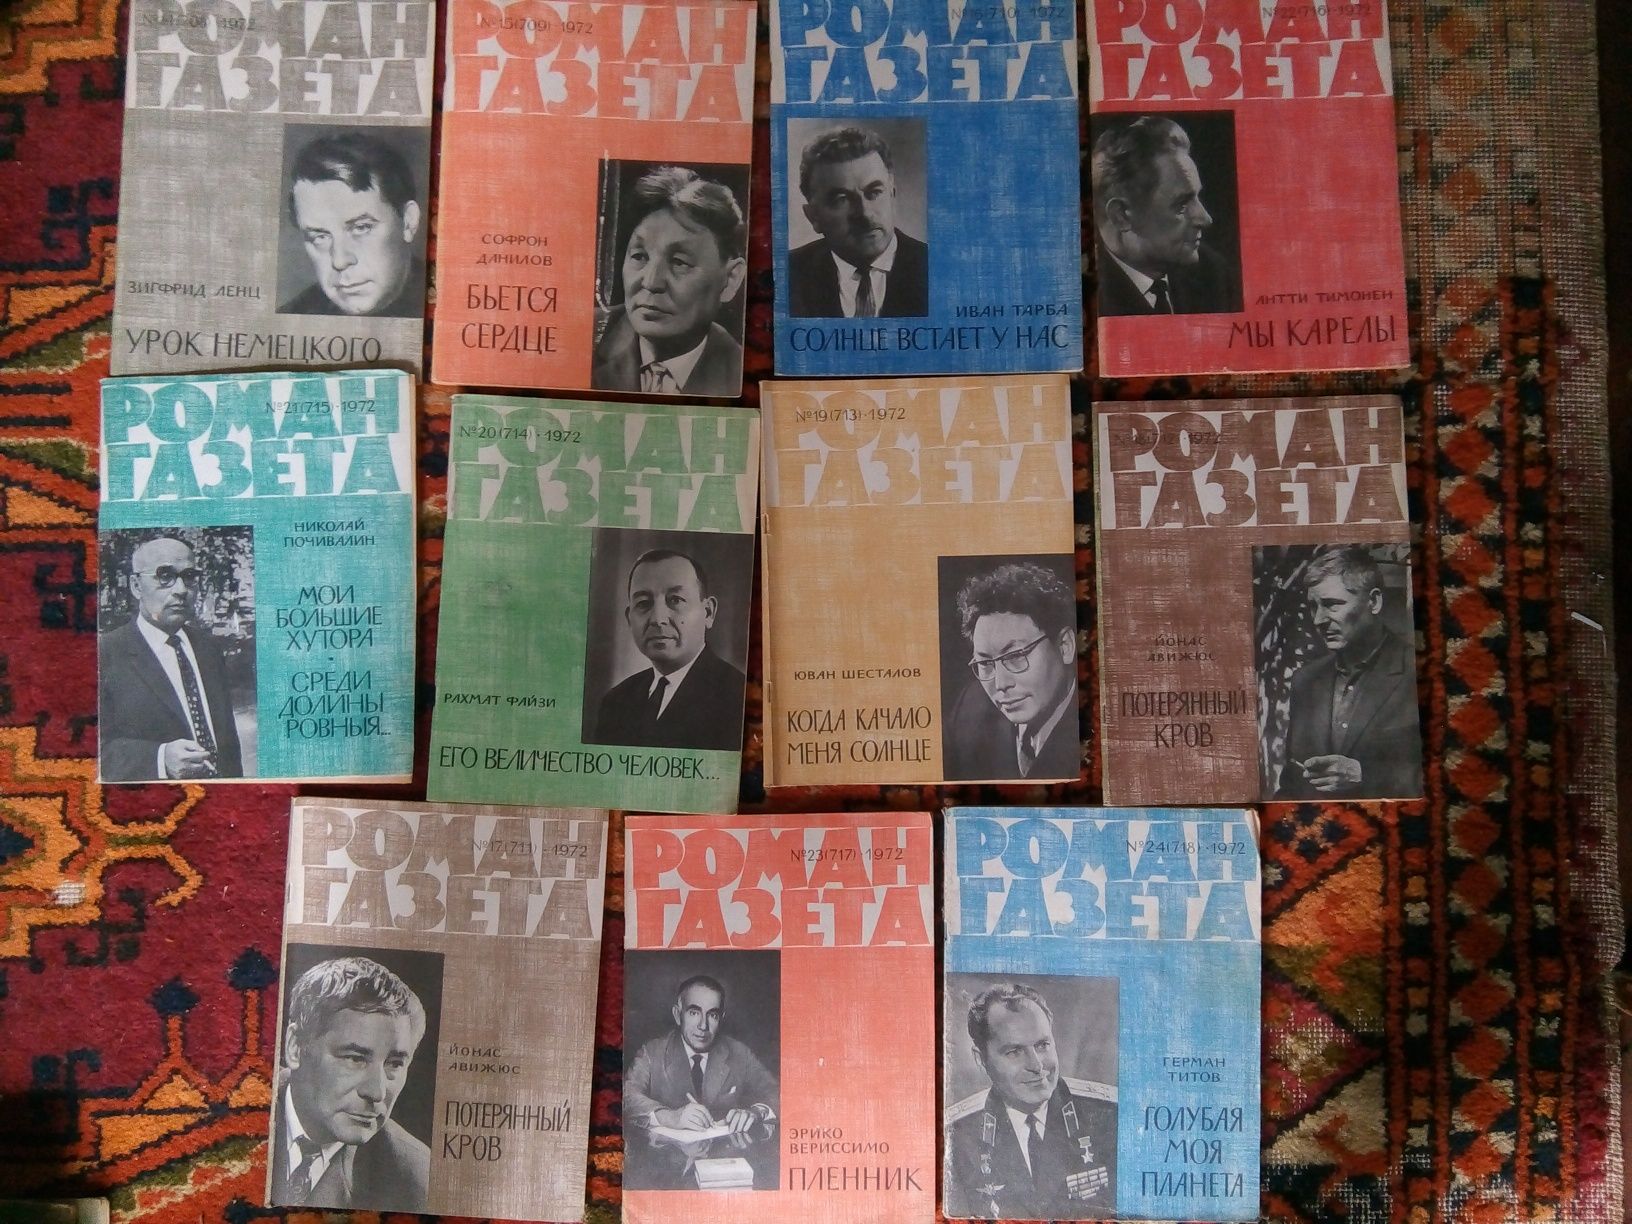 Журнал Роман газета 1958,64-66,69,71,72